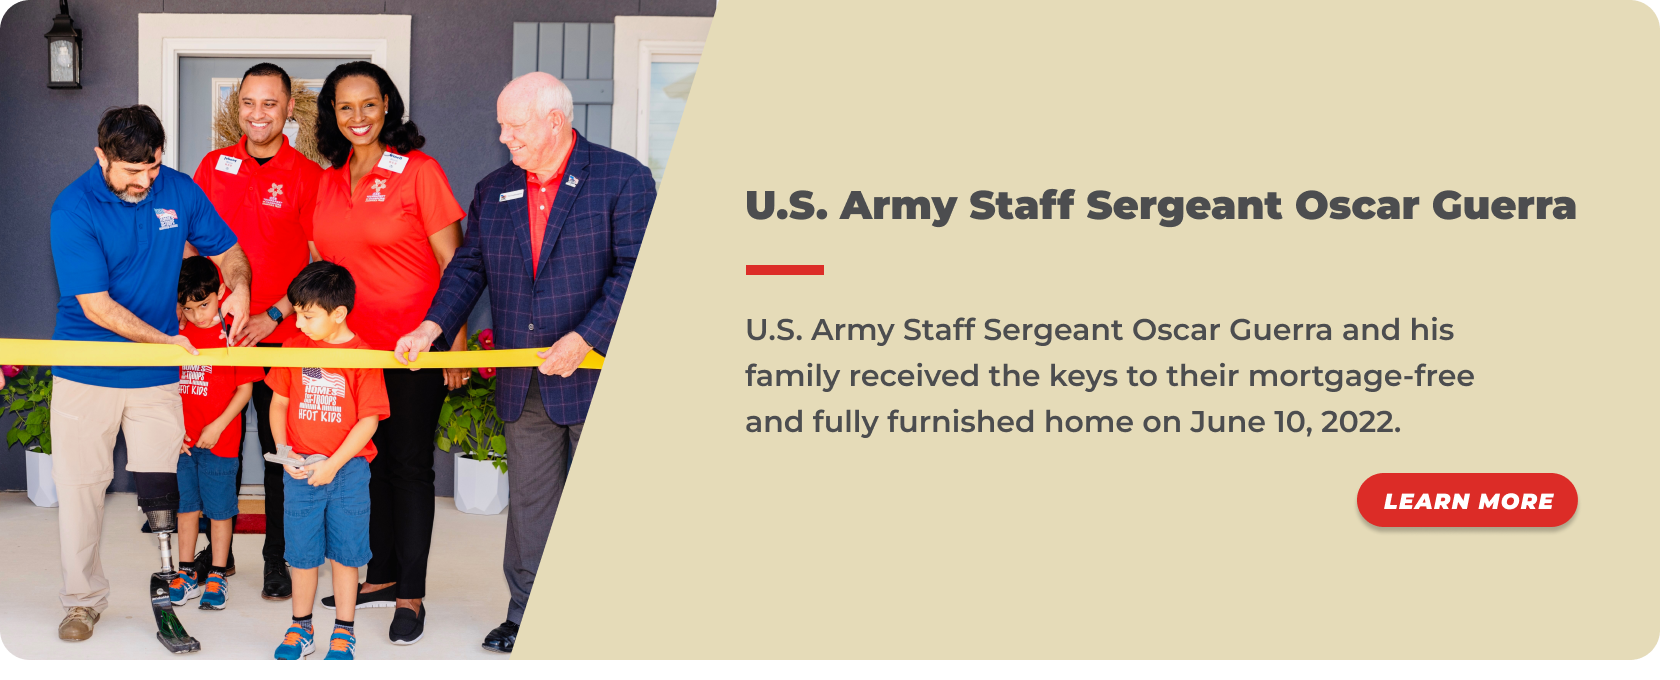 36 - U.S. Army Staff Sergeant Oscar Guerra